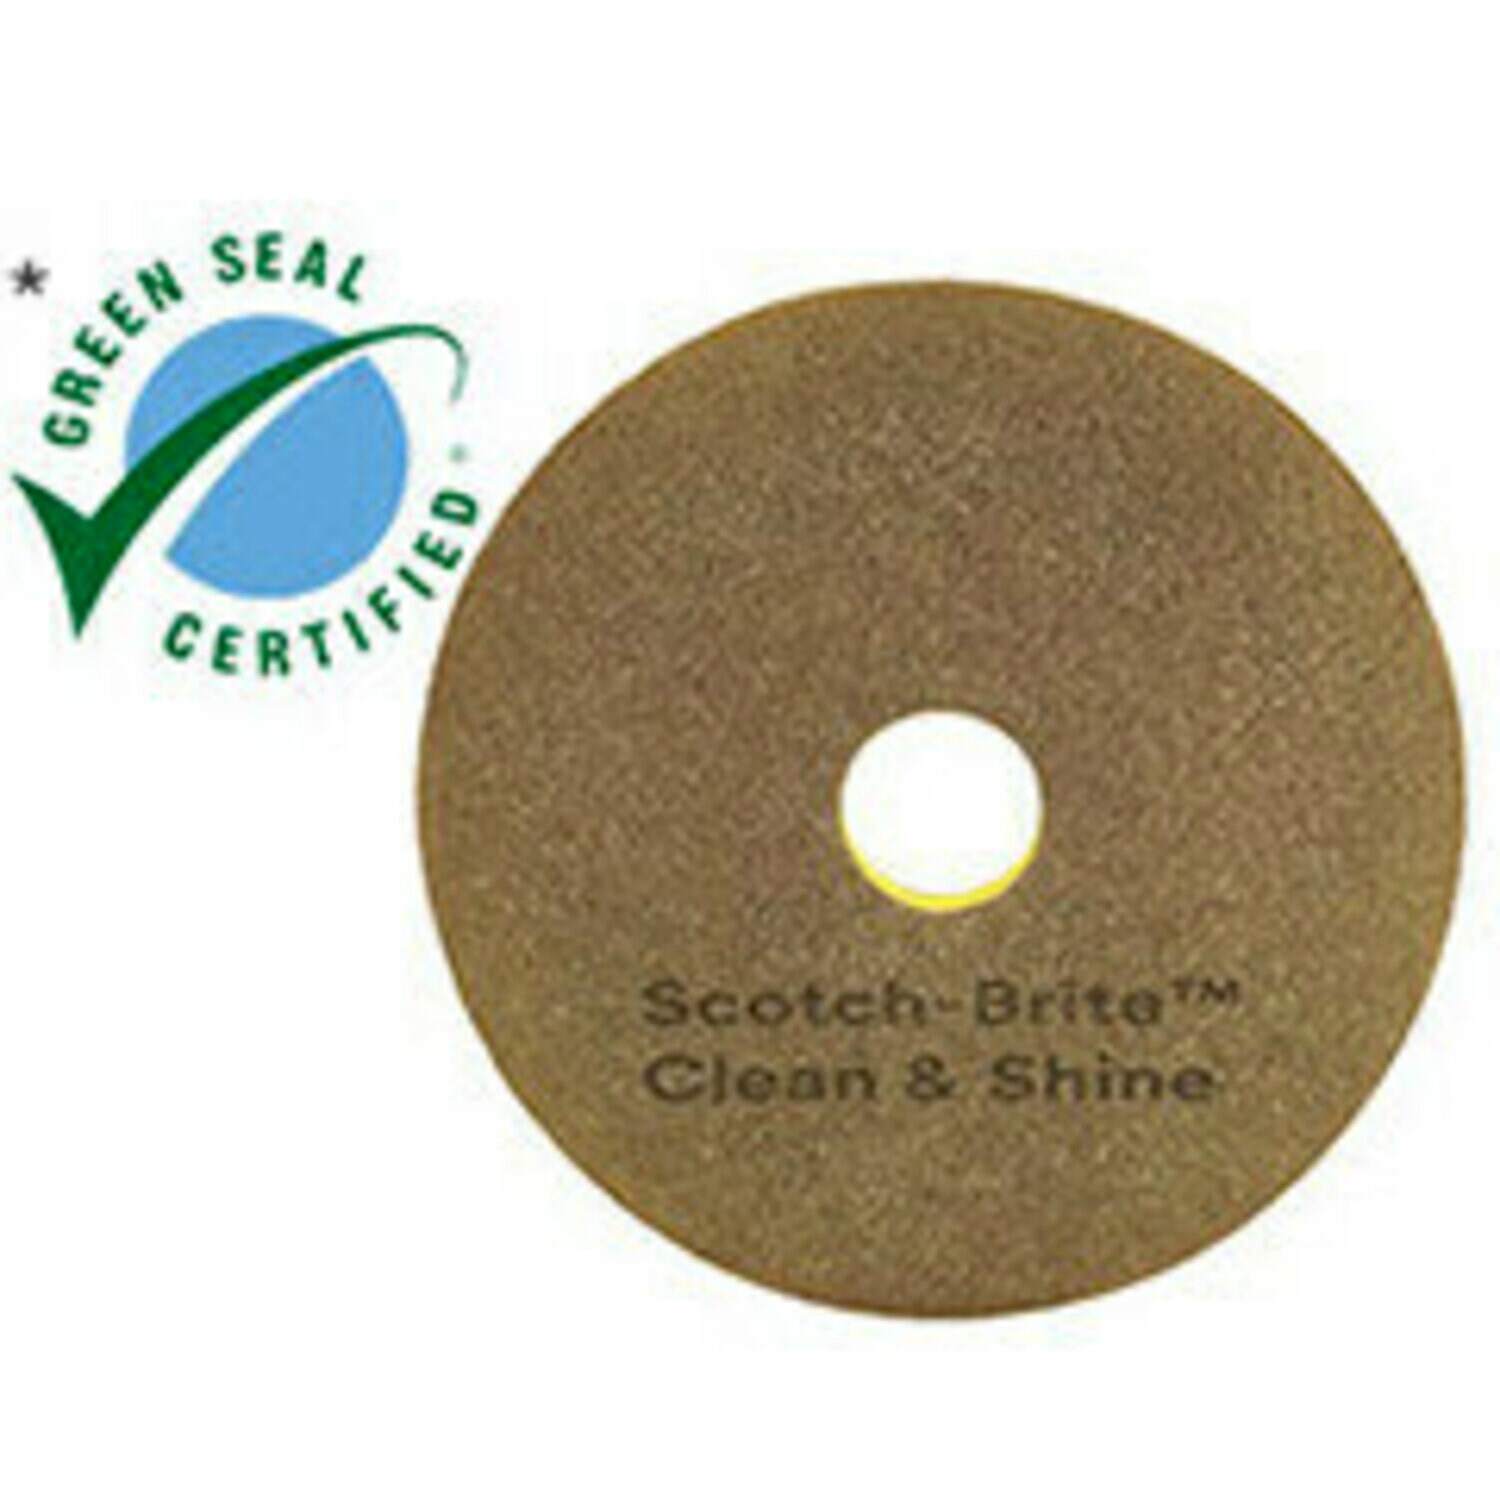 7100148034 - Scotch-Brite Clean & Shine Pad, 18 in, 5/Case